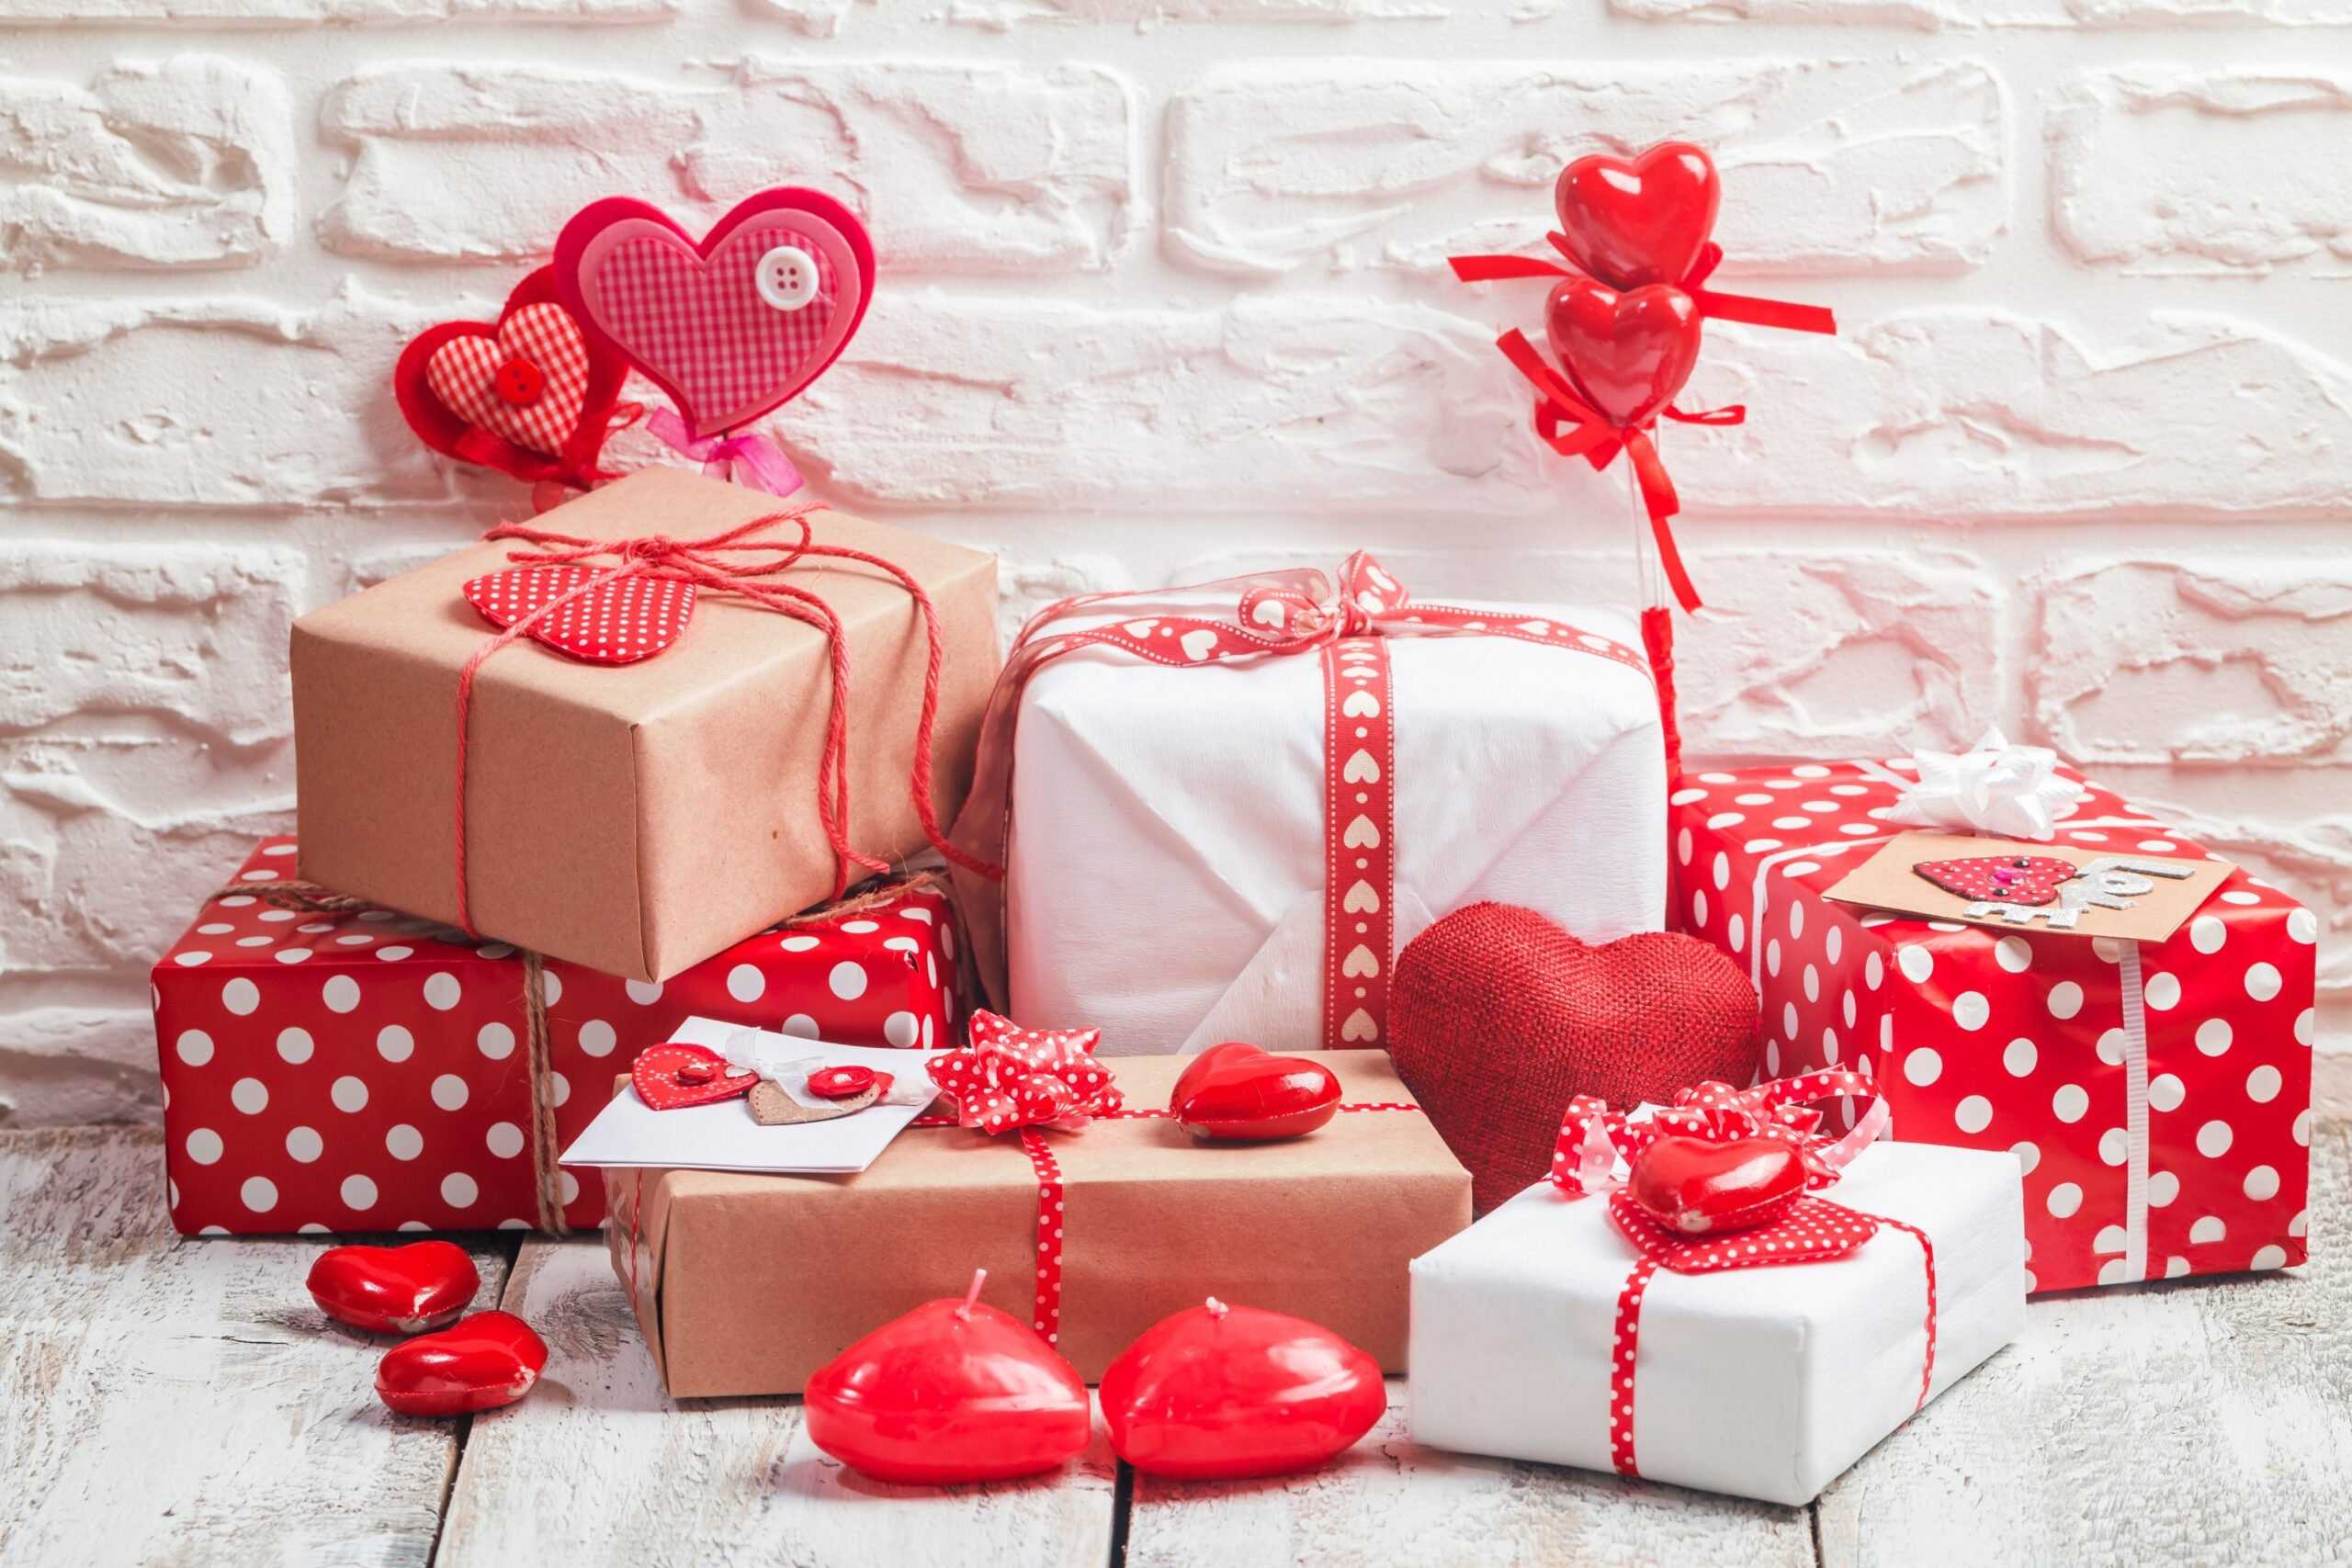 Что подарить мужу на день святого валентина – 14 февраля?